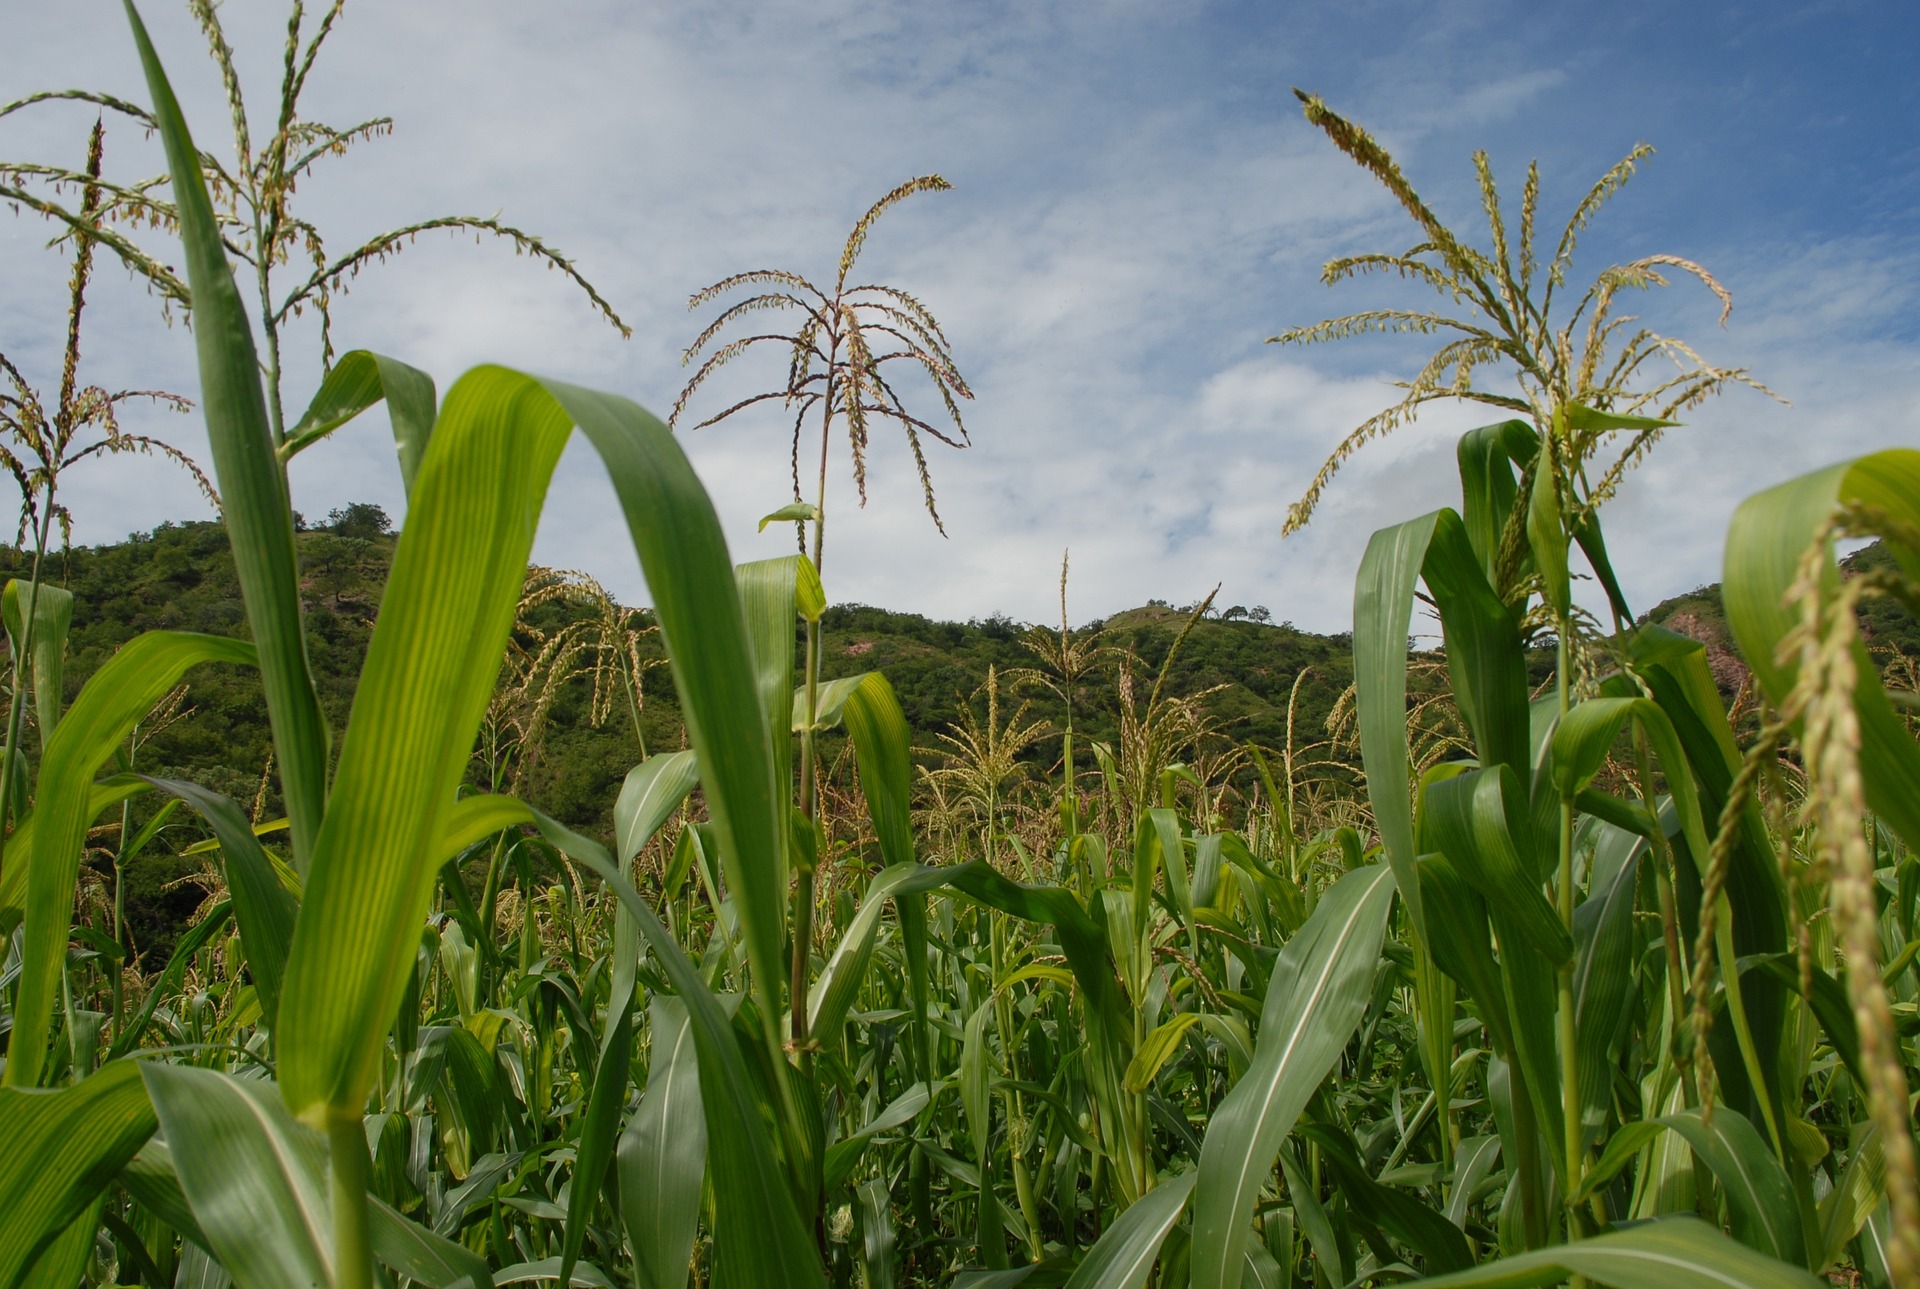 Staring through cornstalks at a green hillside in the distance. Photo by Alvaro González via Pixabay.